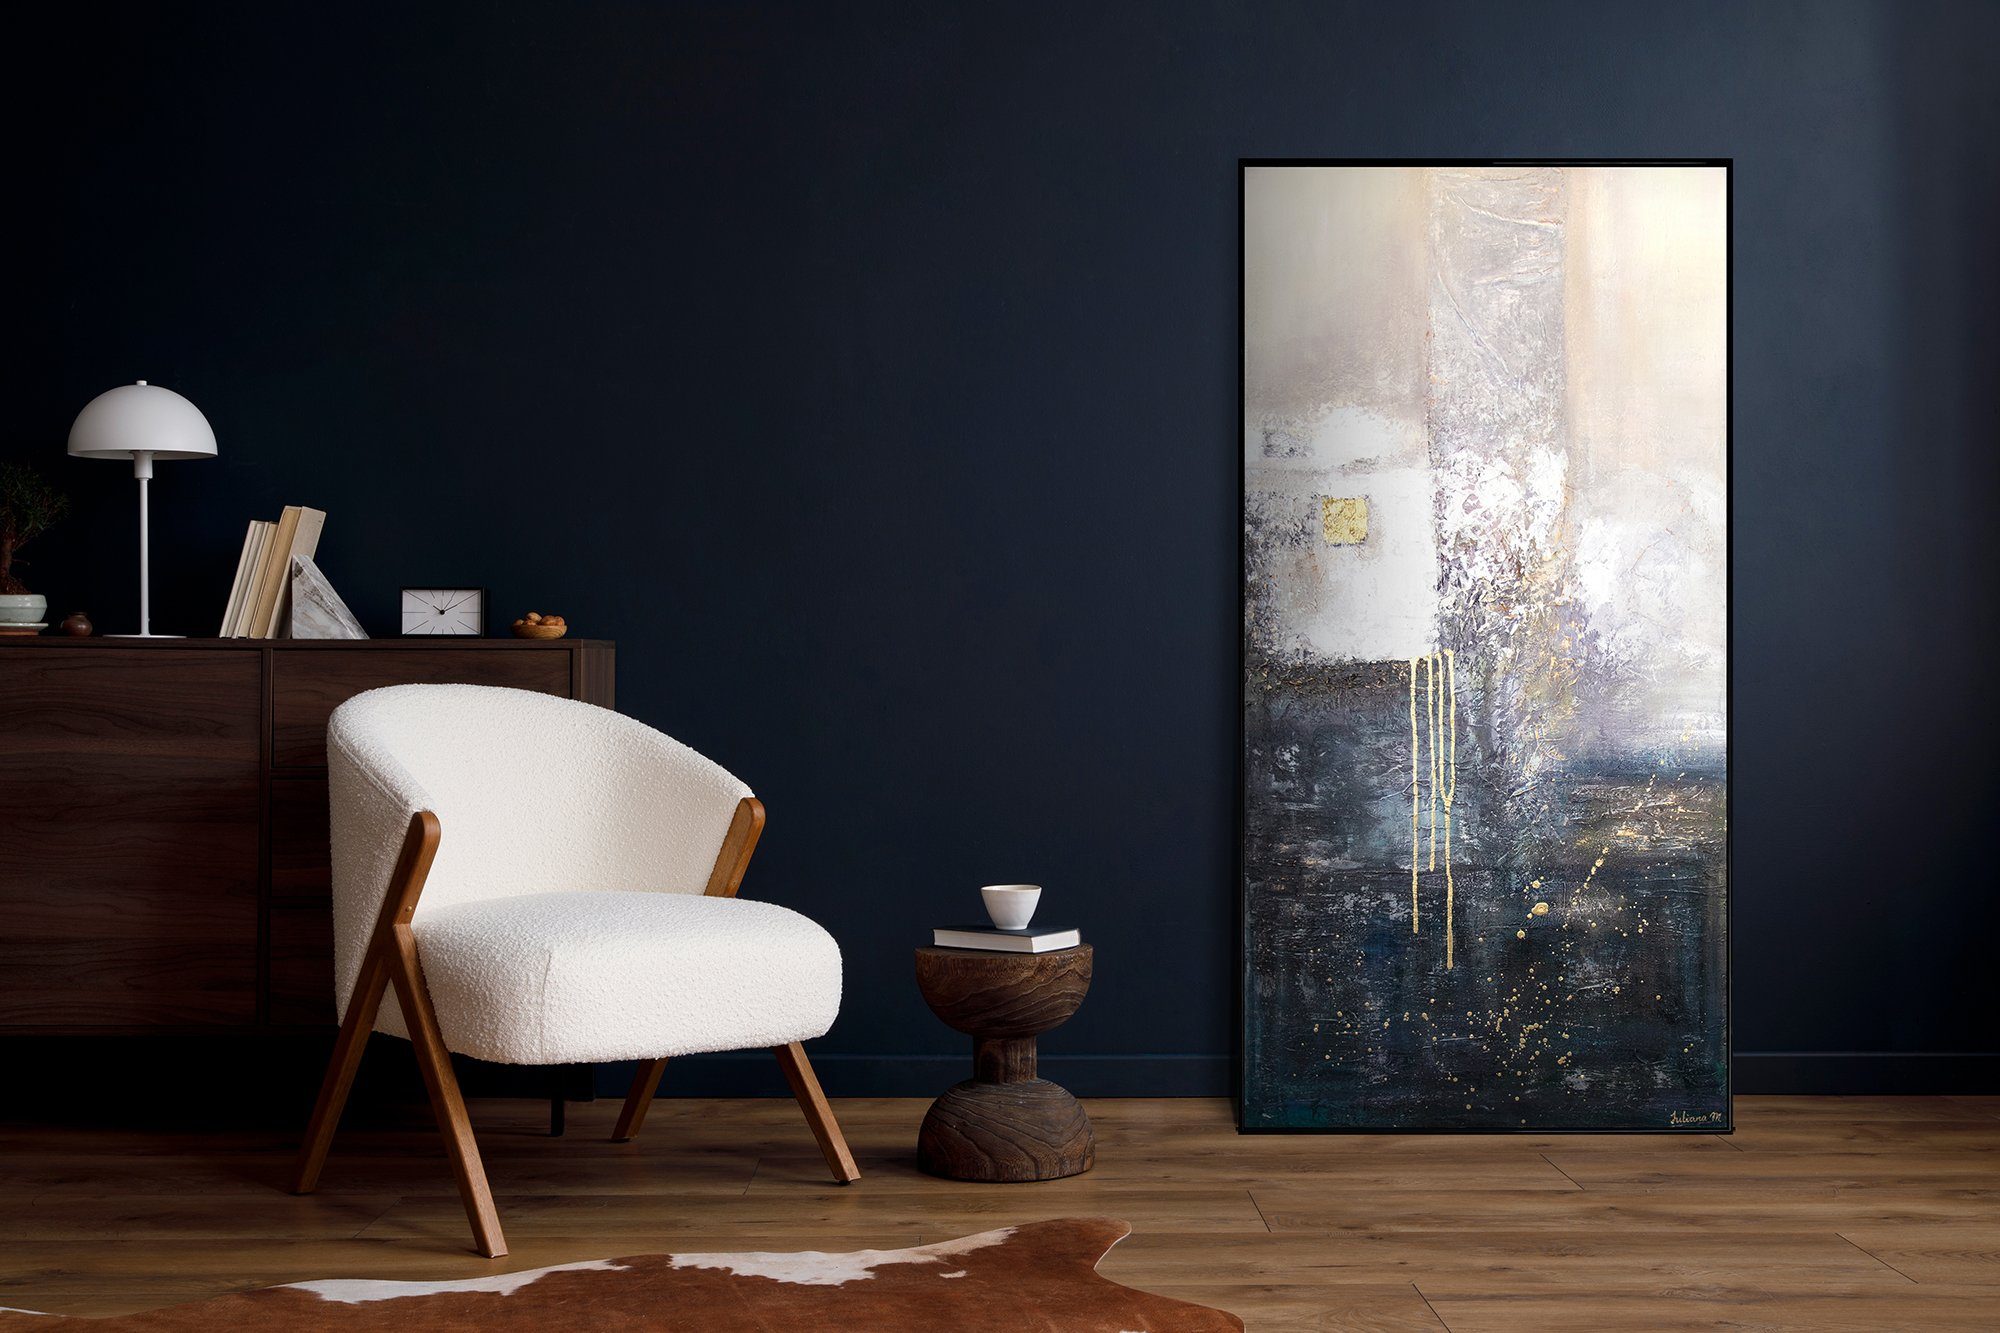 auf Abstrakt, Blau Handgemalt Fragmente, Gold in Weiß Gemälde Rahmen Bild YS-Art Abstraktes Leinwand Mit Schwarz